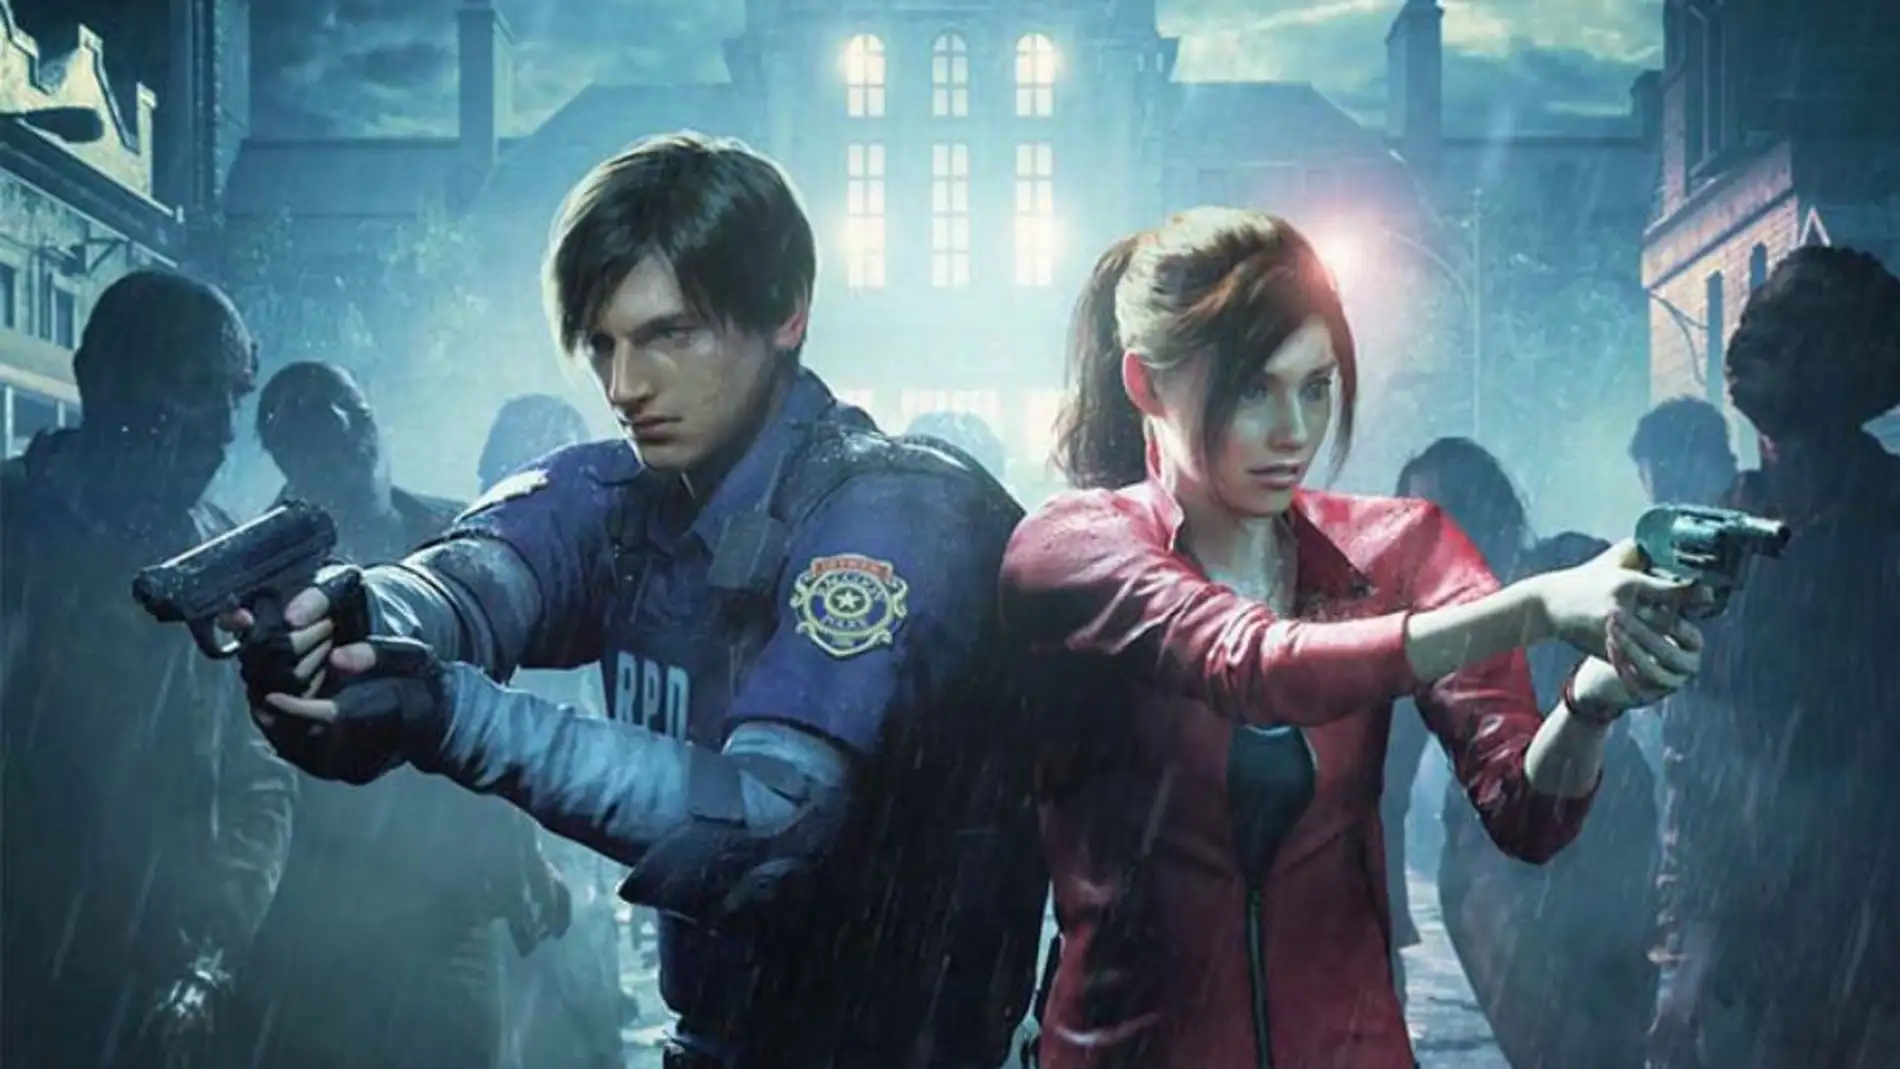 Resident Evil 4 Remake: requisitos mínimos y recomendados para PC